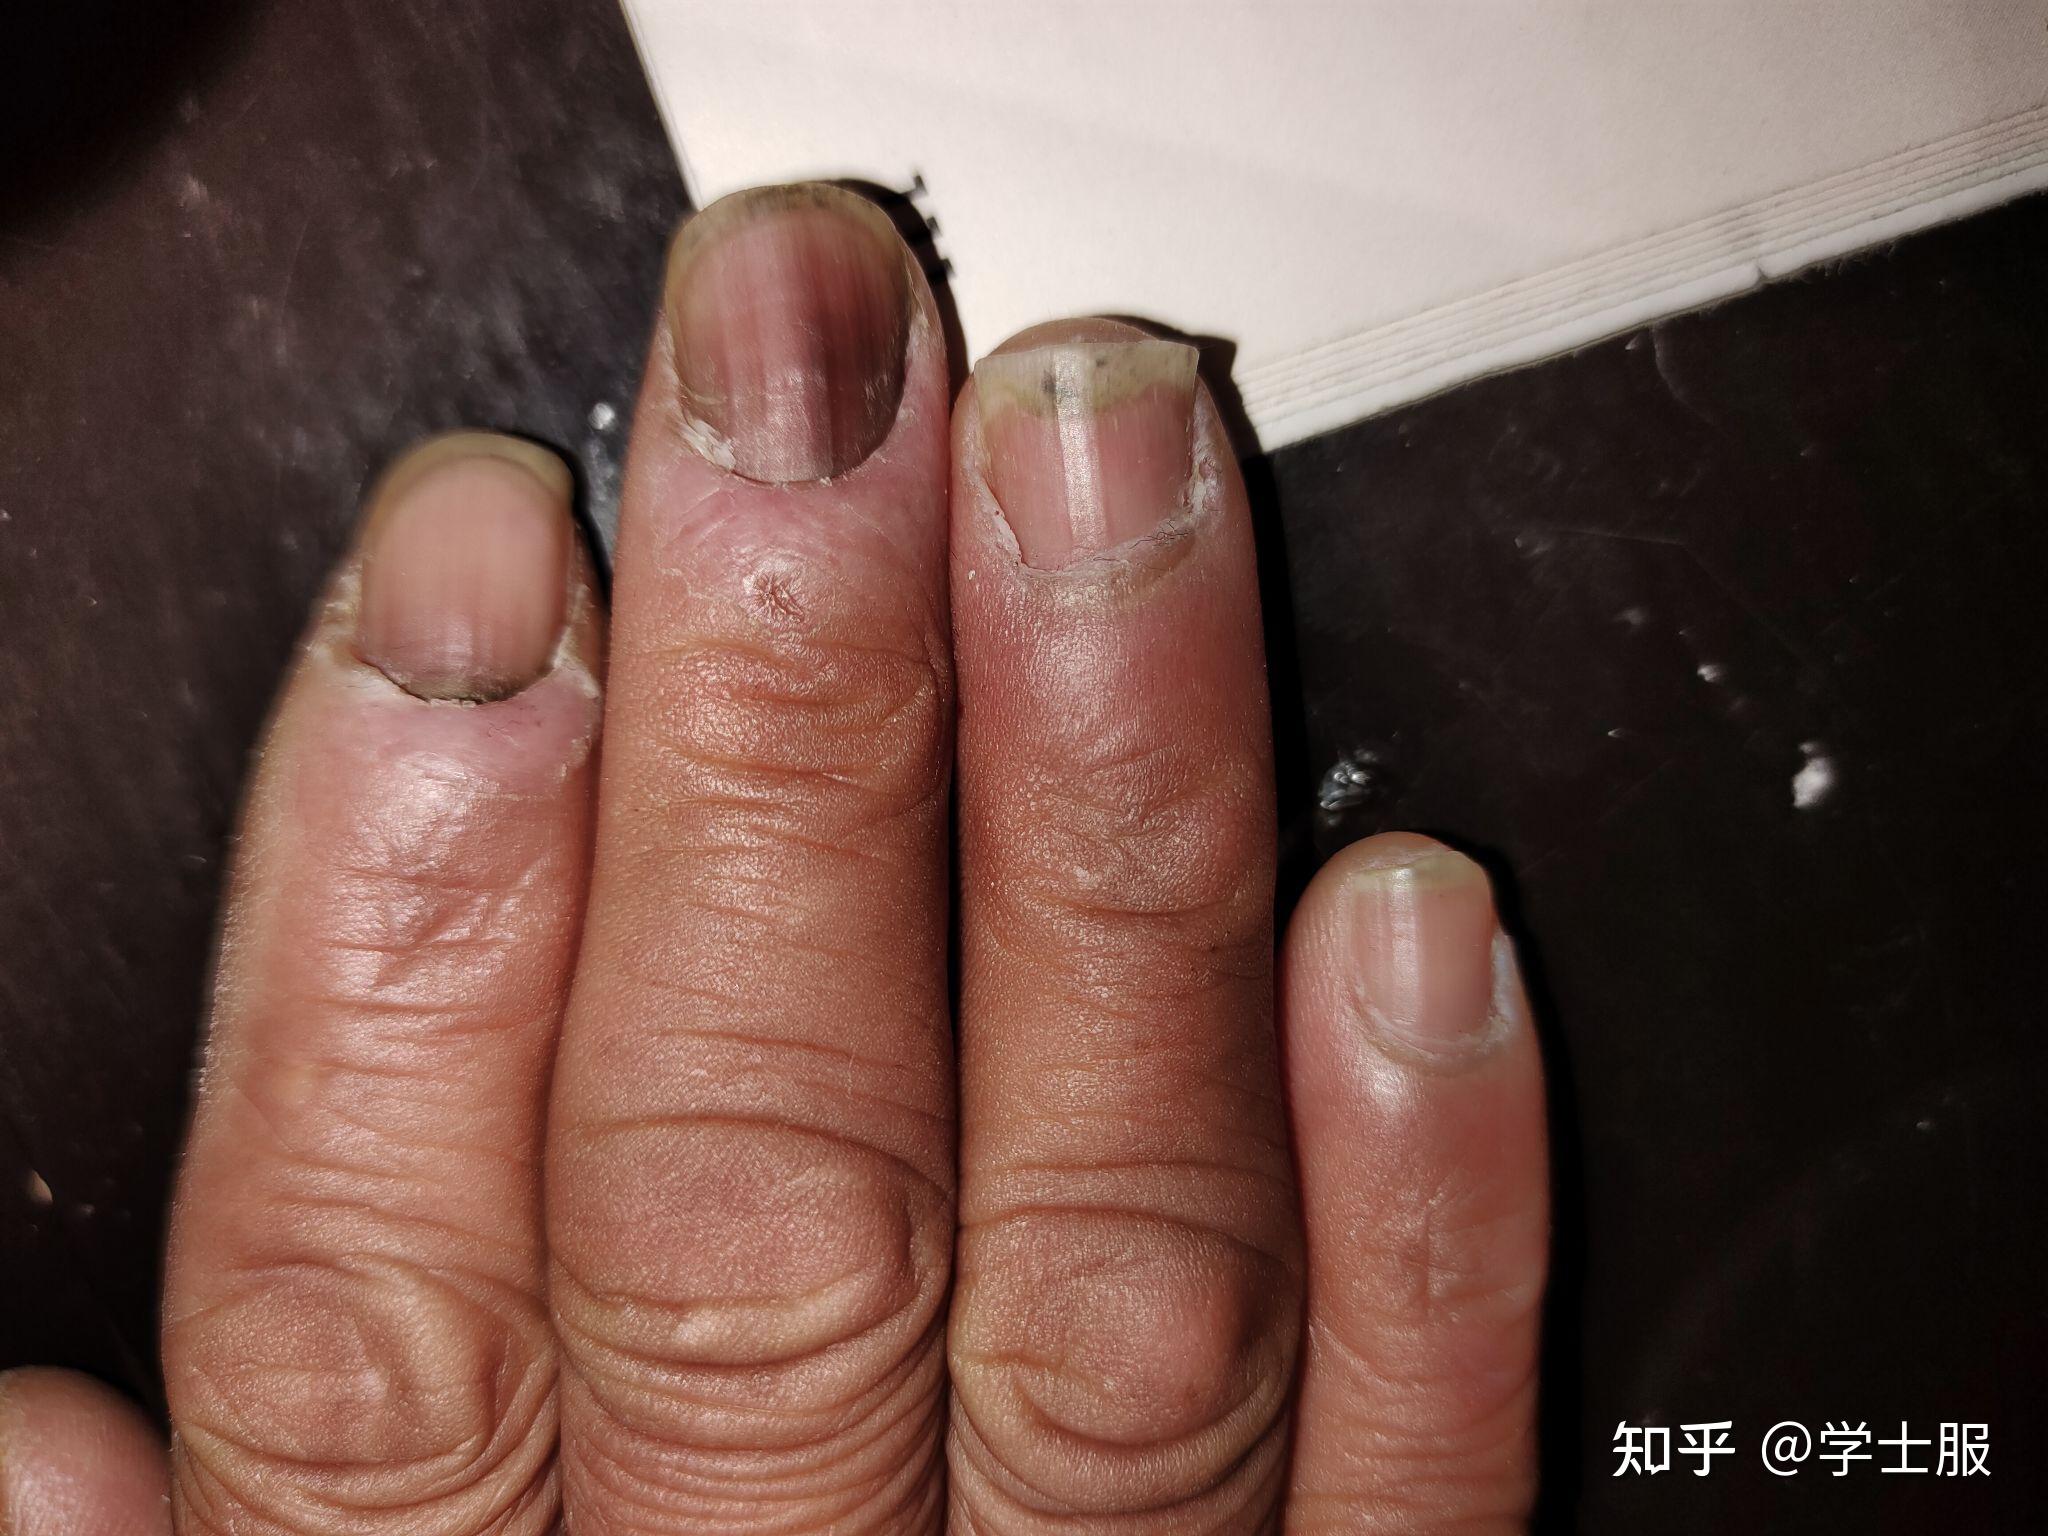 母亲最近手出现了问题,指甲变黑了,请问网友们这是灰指甲吗? 